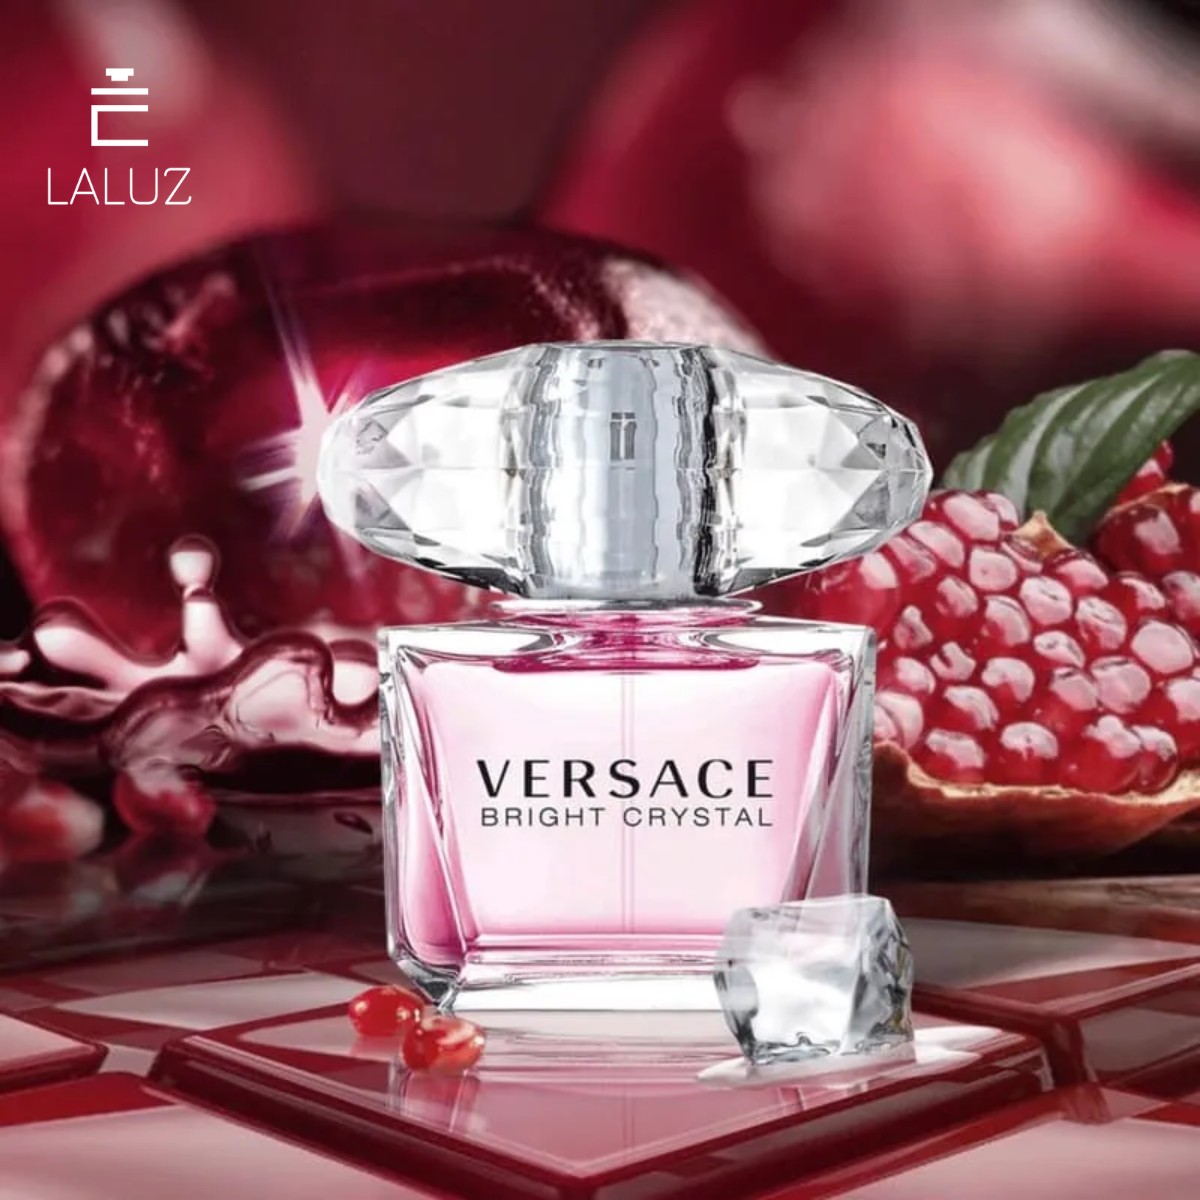 Nước hoa Versace Bright Crystal EDT thích hợp với những người phụ nữ thanh tao, nhẹ nhàng